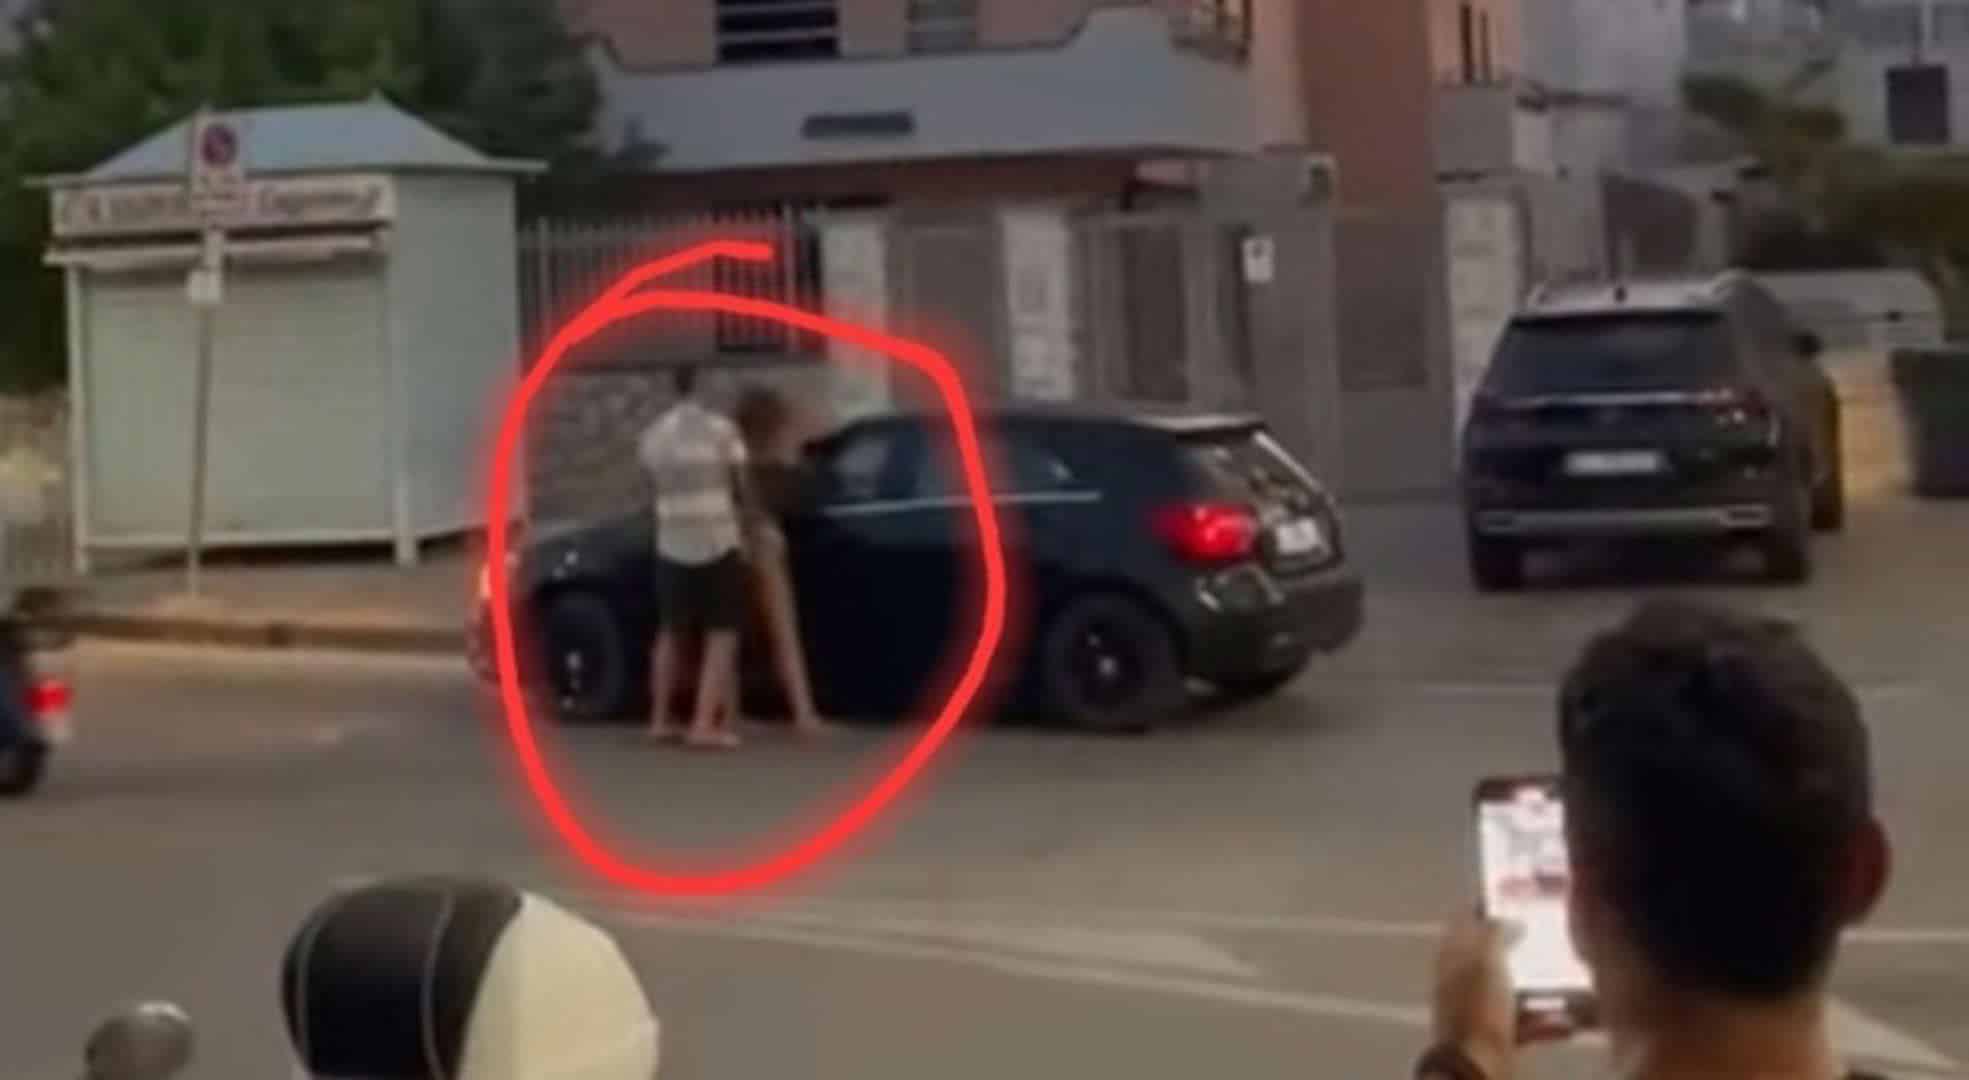 Fanno sesso in strada davanti all’auto: identificati grazie alla targa